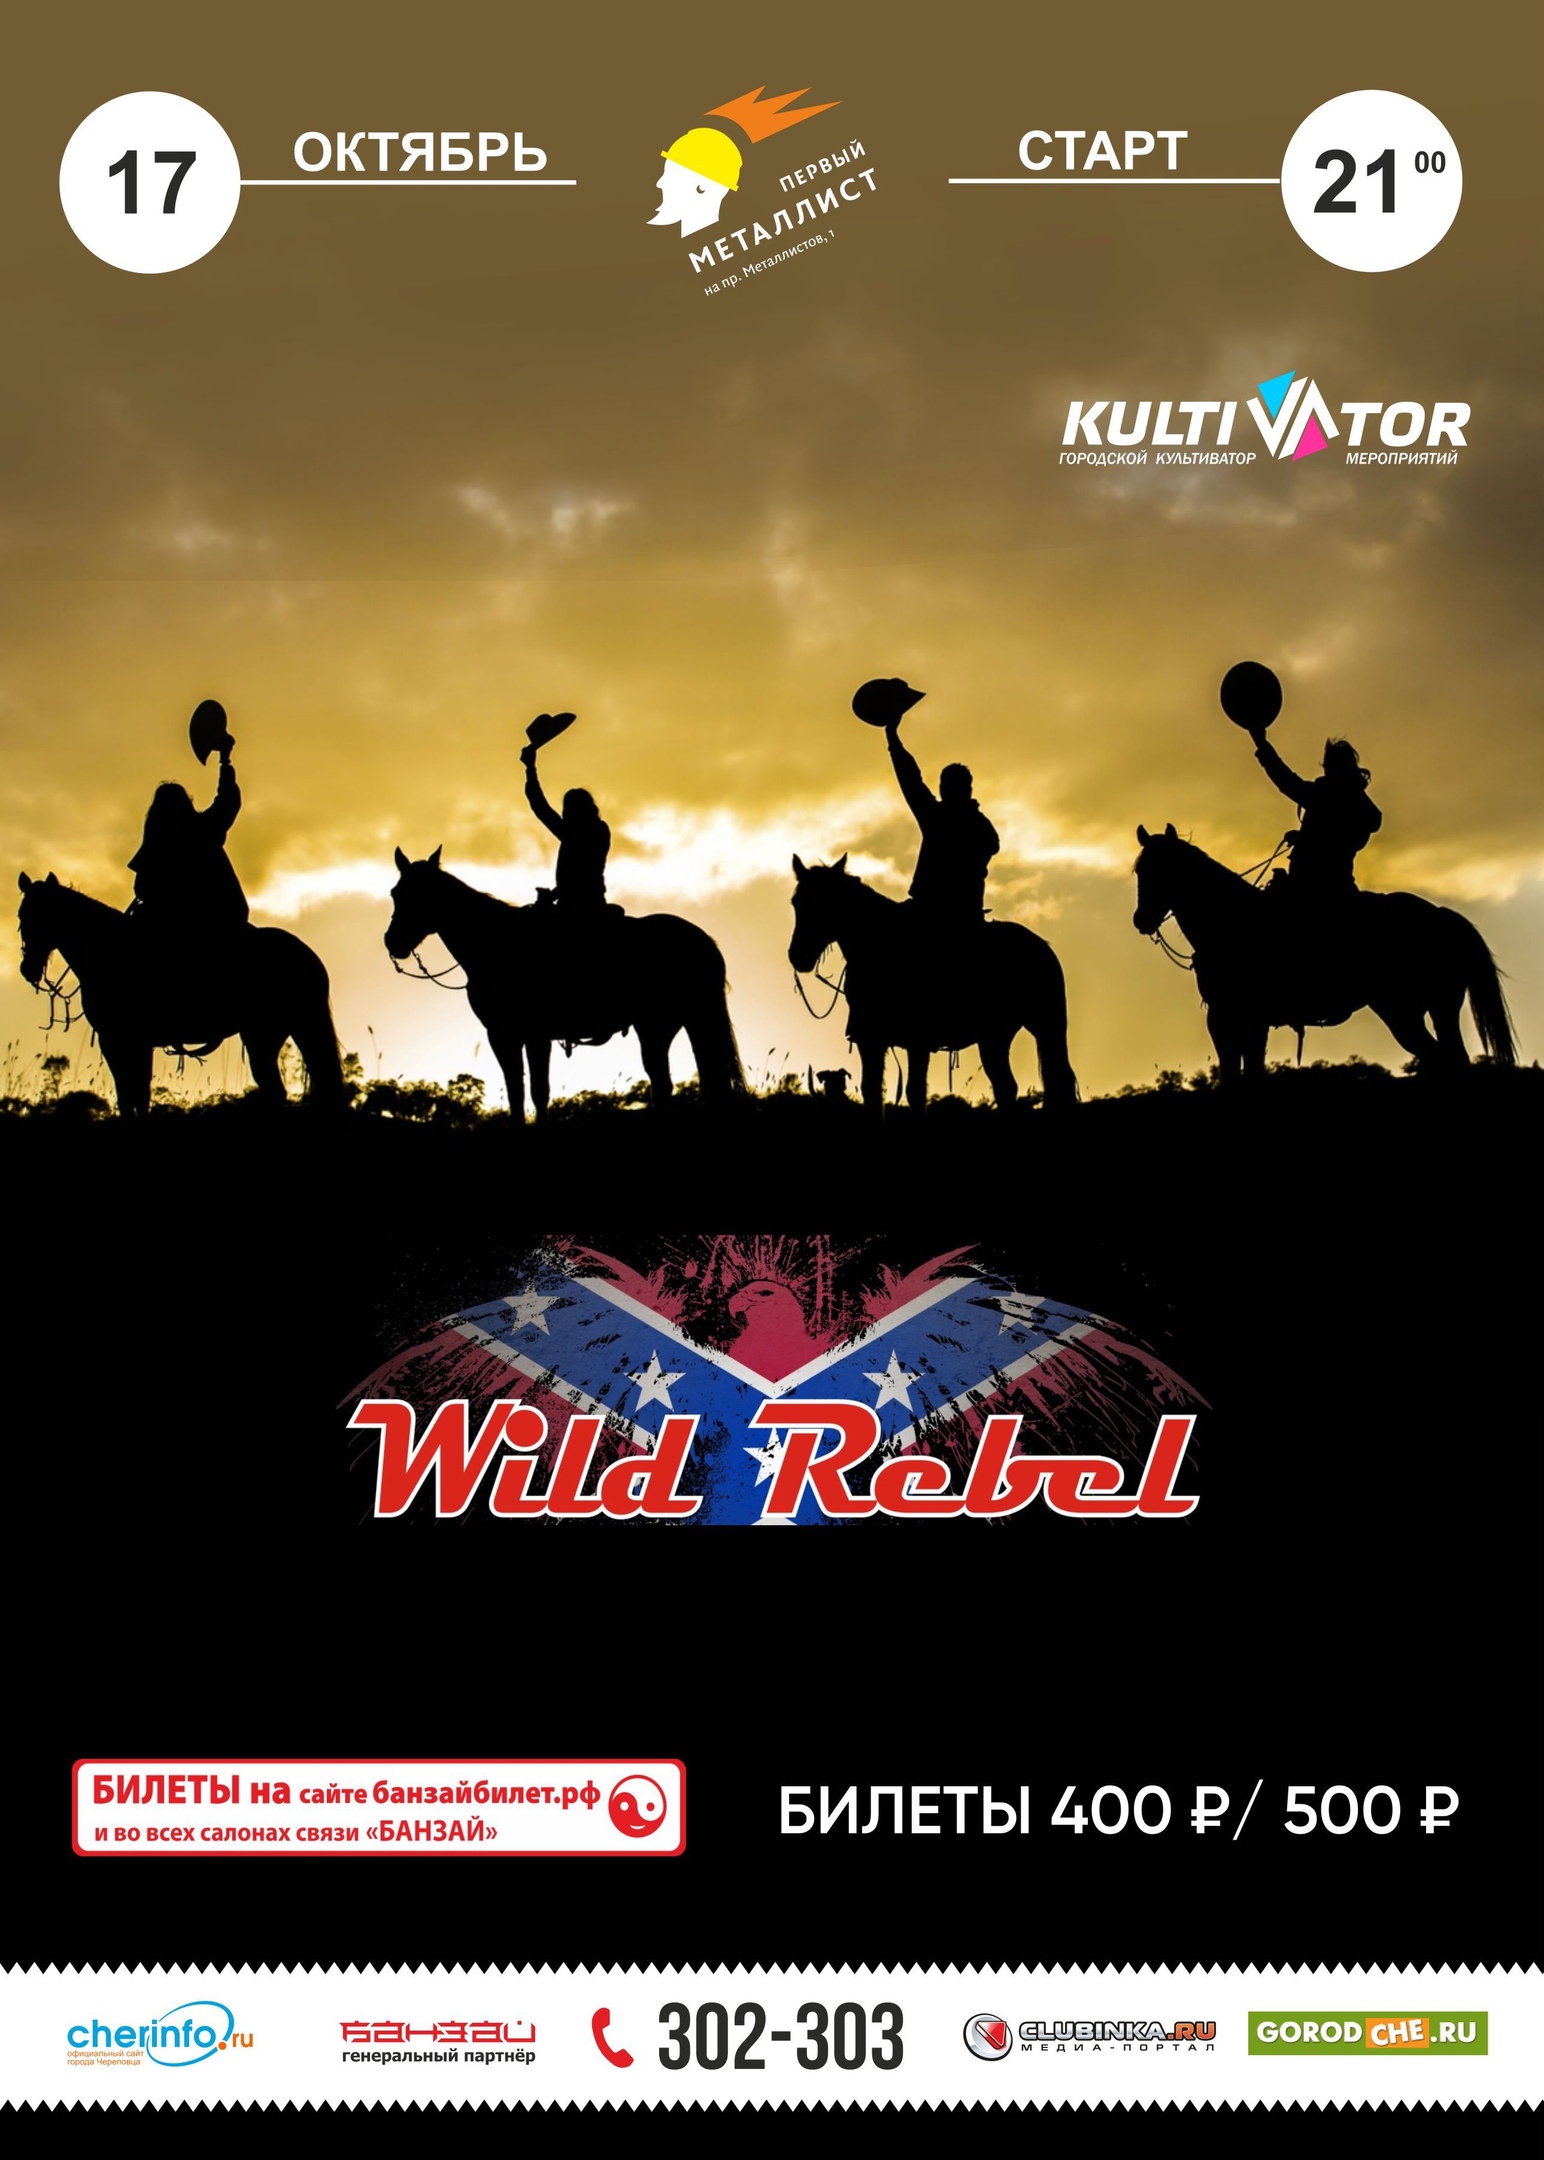 Wild Rebel в баре "Первый металлист" 17.10.2020